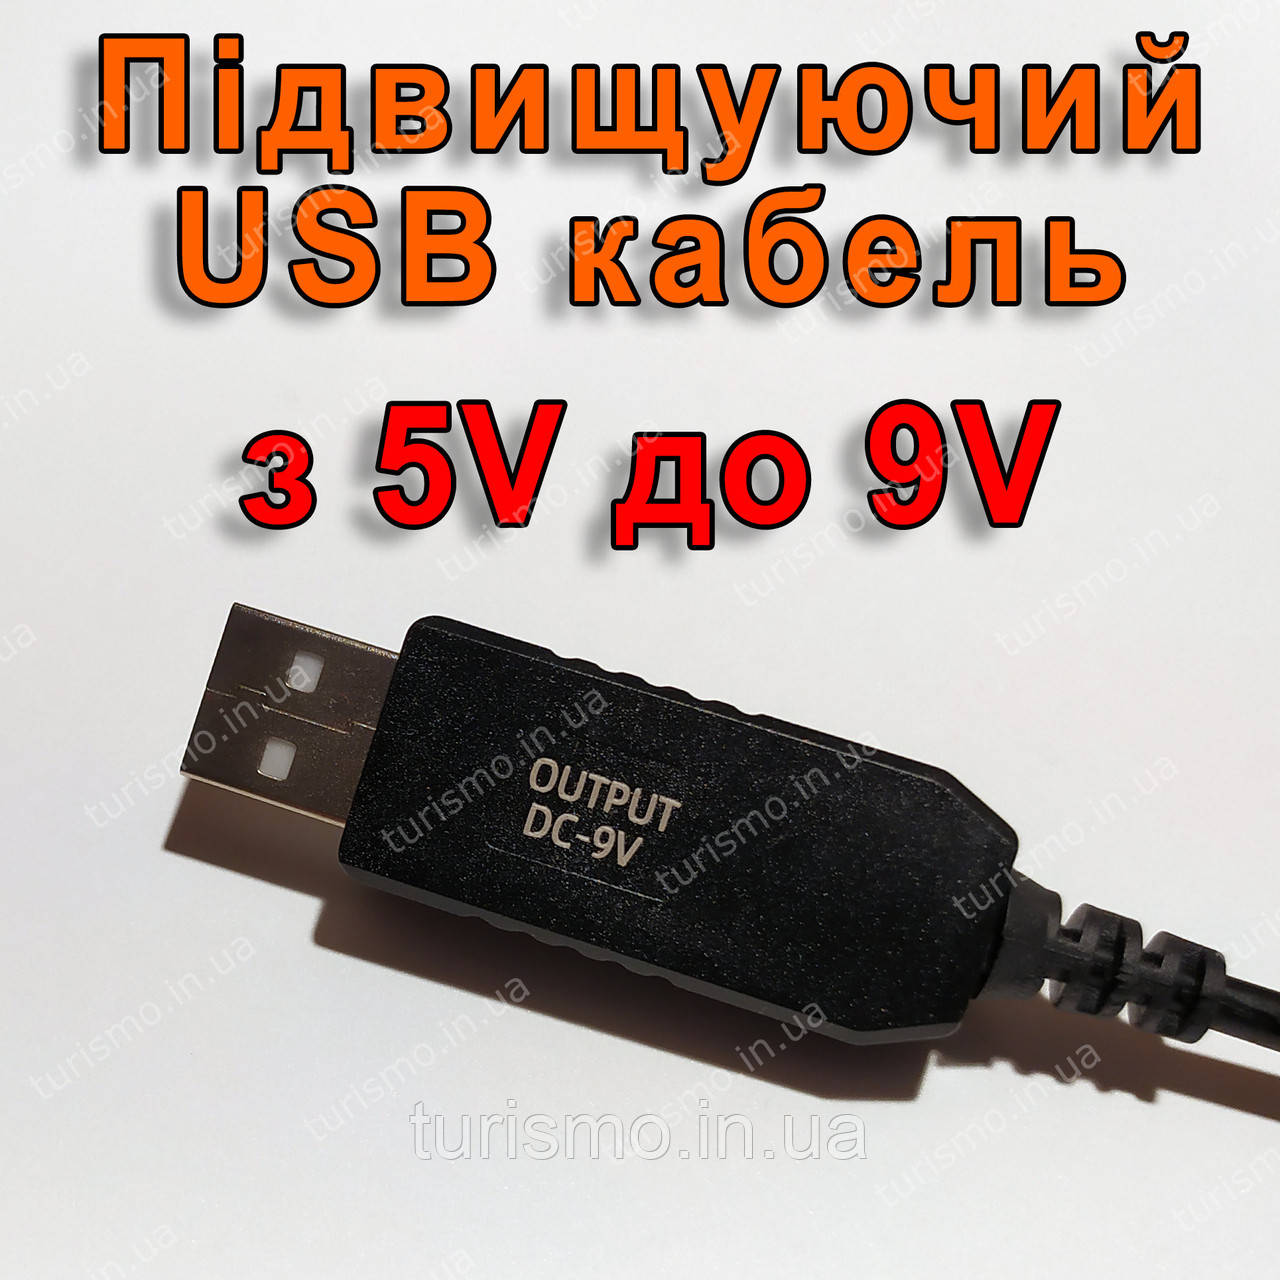 Підвищуючий USB кабель для живлення роутера 9V (6W max) від звичайного повербанку